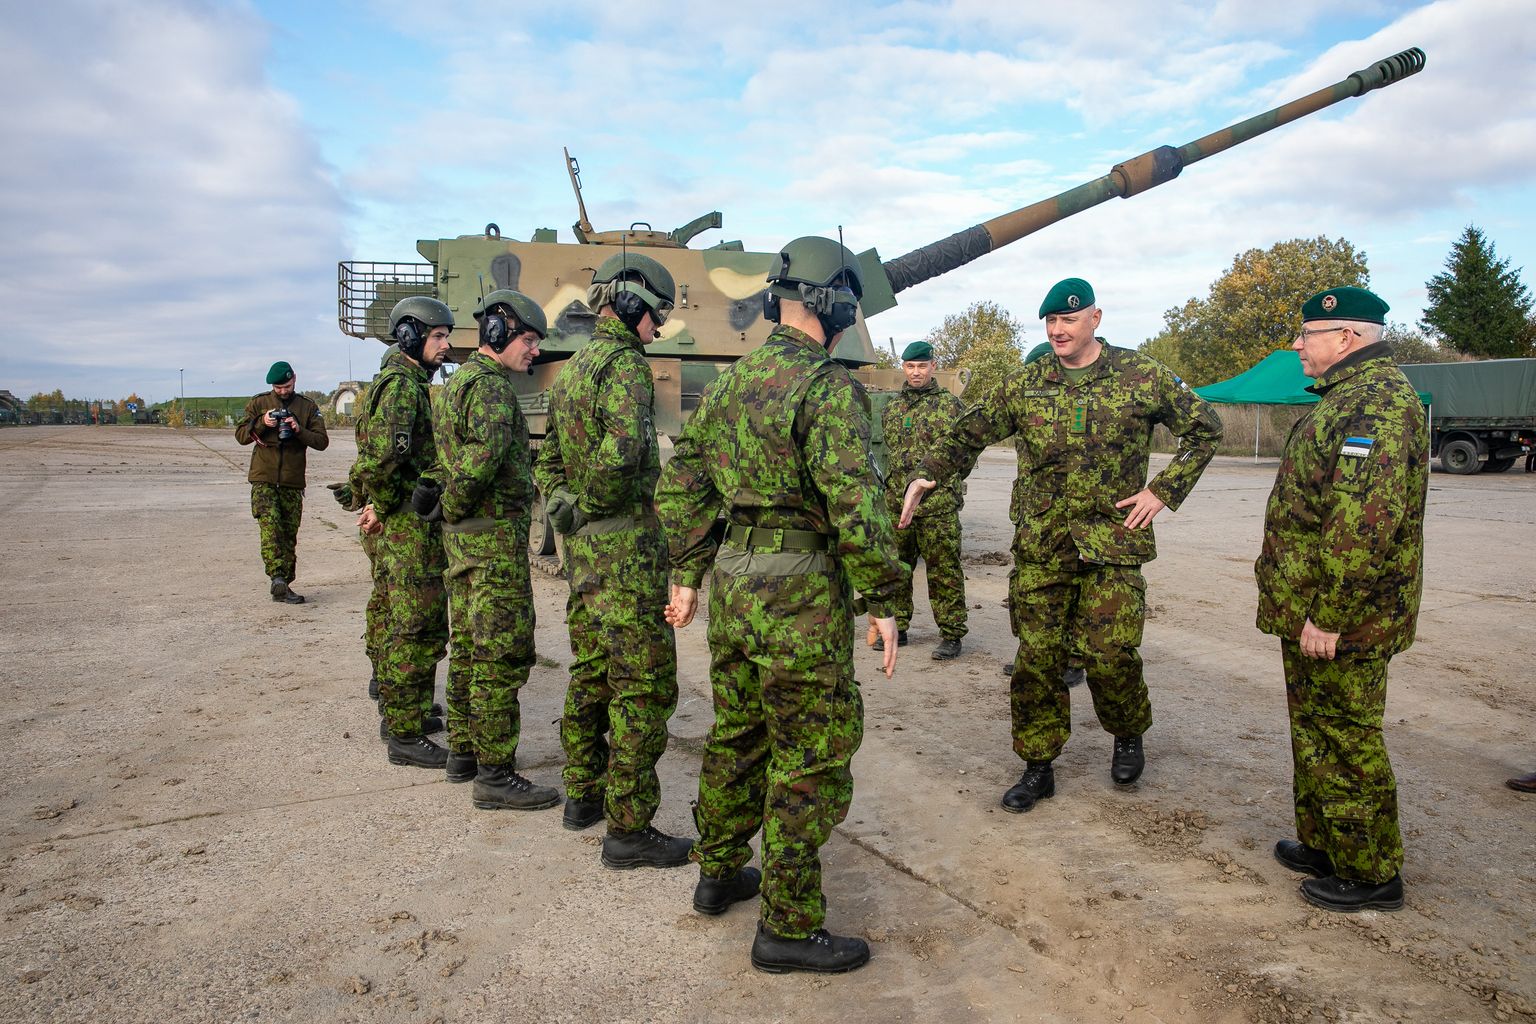 Kaitsevägi tutvustas Tapal liikursuurtükke K9 Kõu. Pilt on illustratiivne.